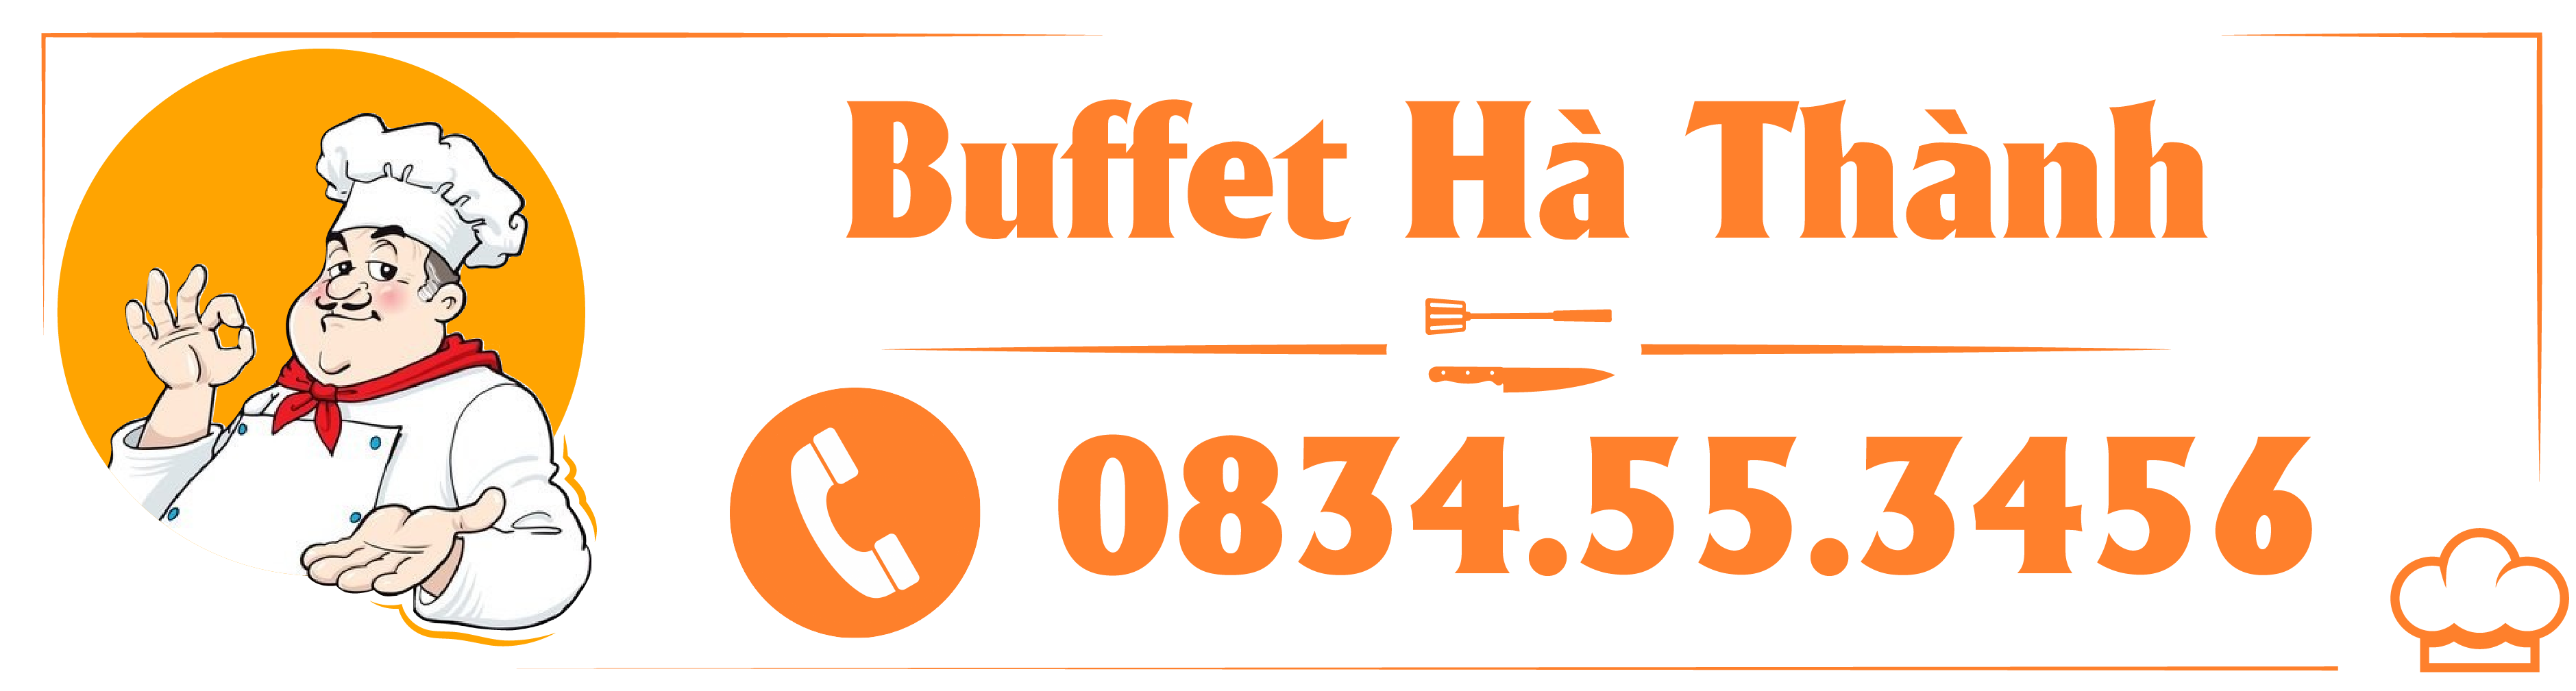 Buffet Hà Nội | Đặt Tiệc Buffet ở Hà Nội | Nấu Tiệc Buffet ở Hà Nội